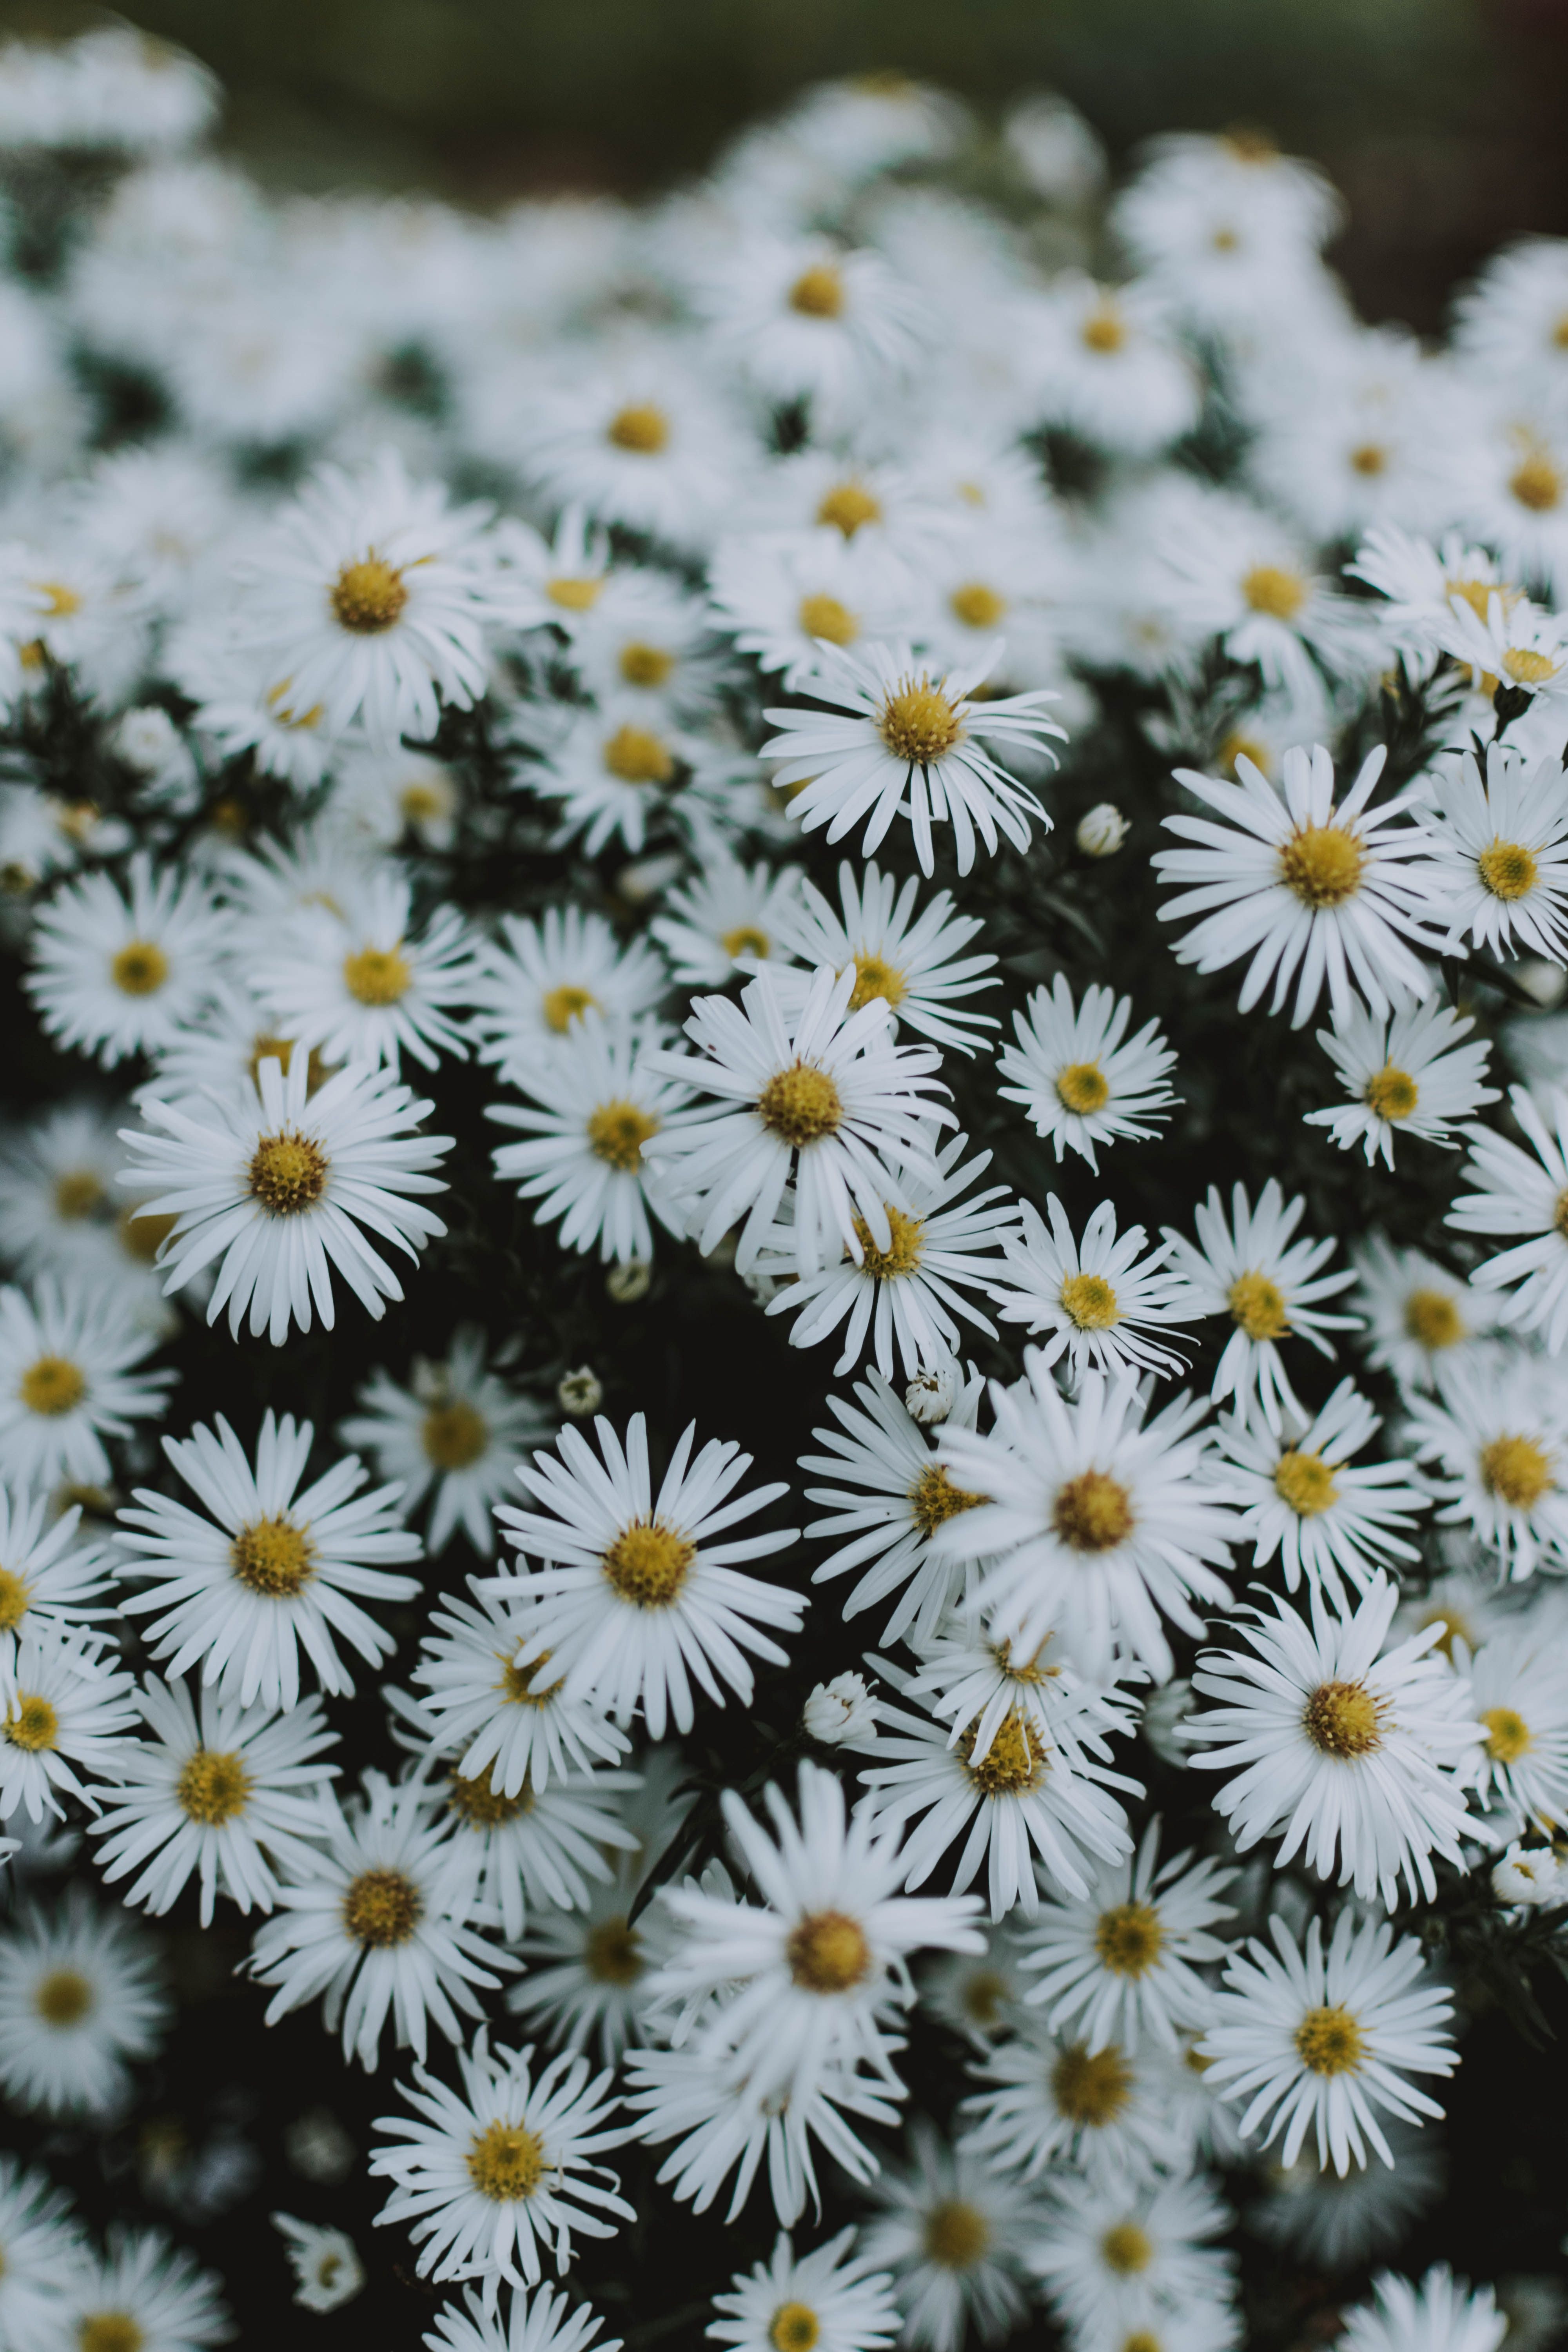  Blumen Hintergrundbild 4000x6000. 200.Weiße Blumen Bilder Und Fotos · Kostenlos Downloaden · Stock Fotos